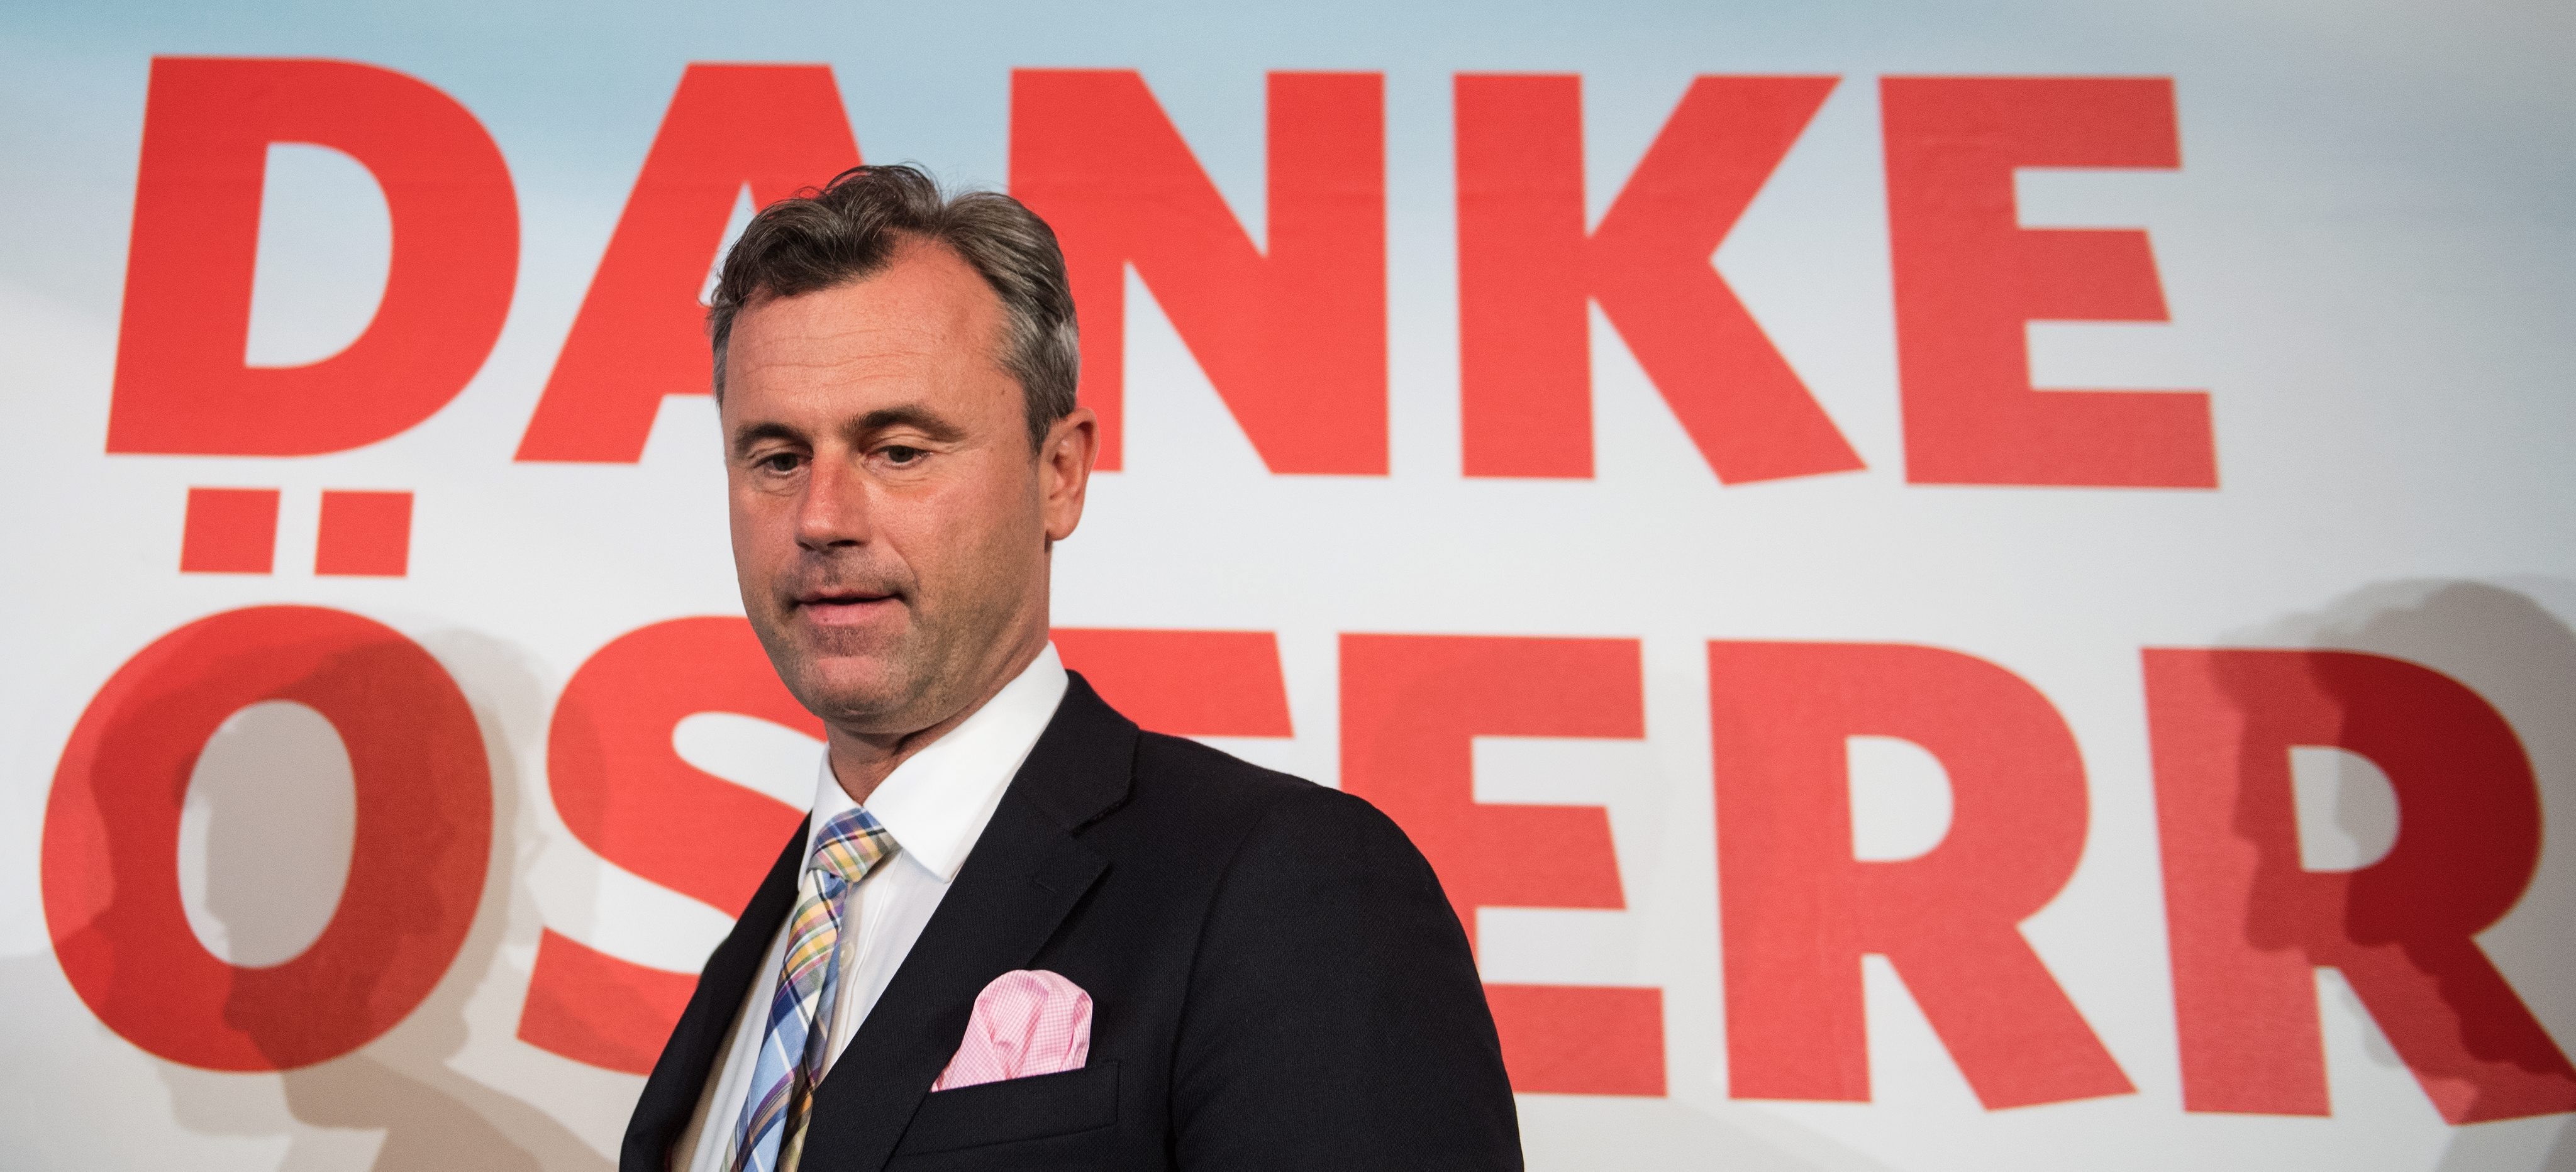 Ponavljaju se izbori u Austriji – druga šansa radikalnom desničaru Hoferu?